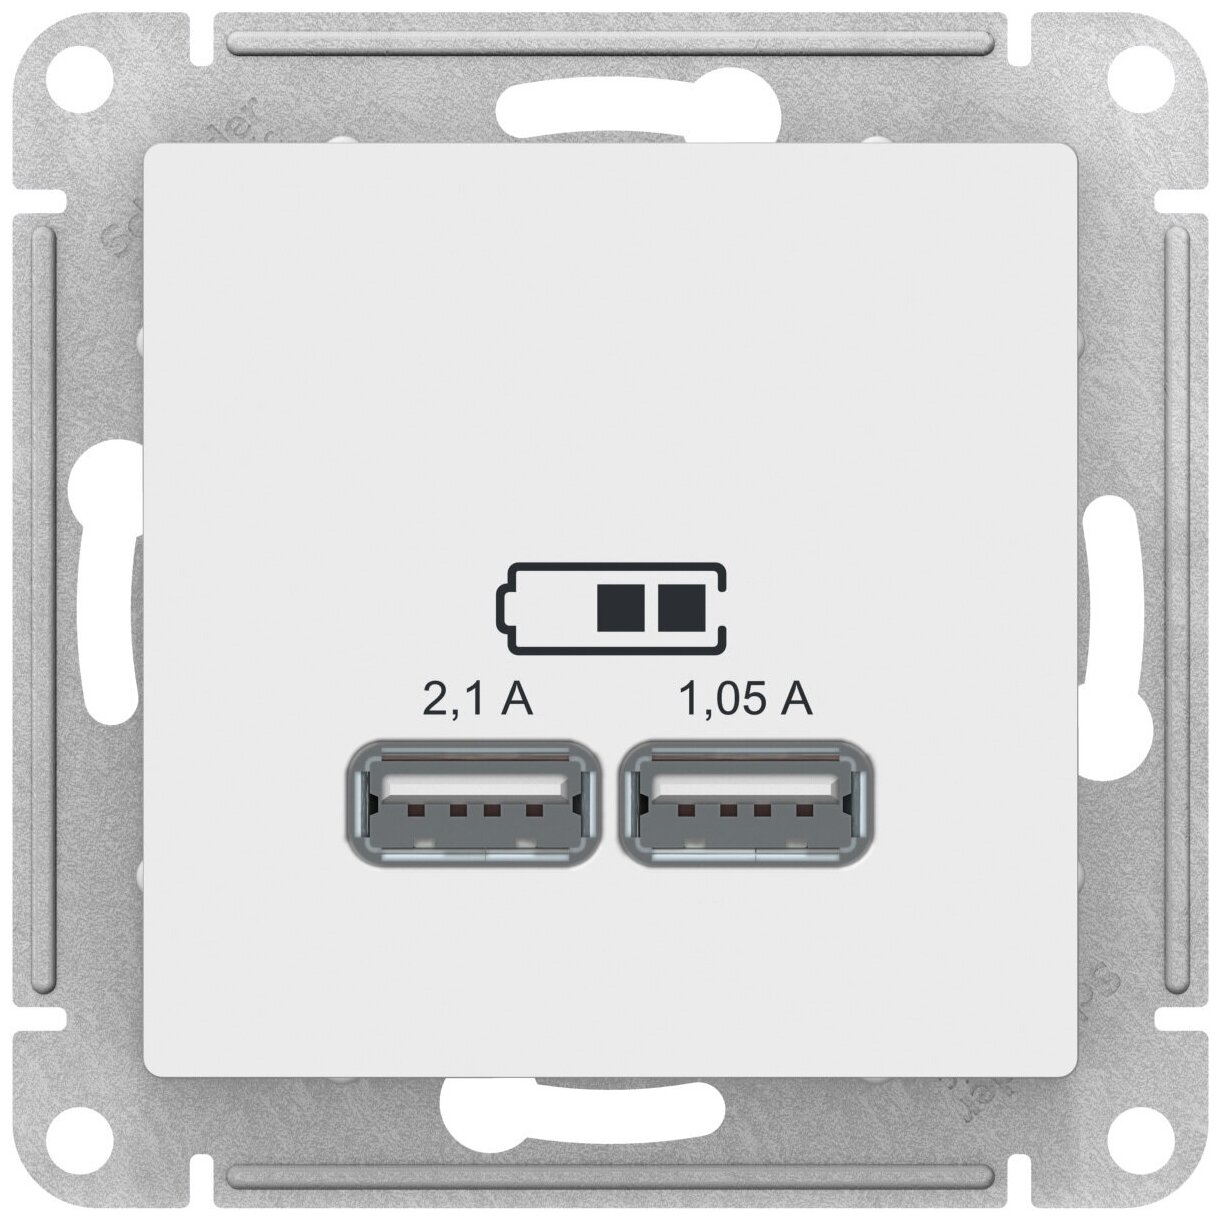 SE AtlasDesign Бел Розетка USB 5В 1 порт x 21 А 2 порта х 105 А механизм (комплект 6)